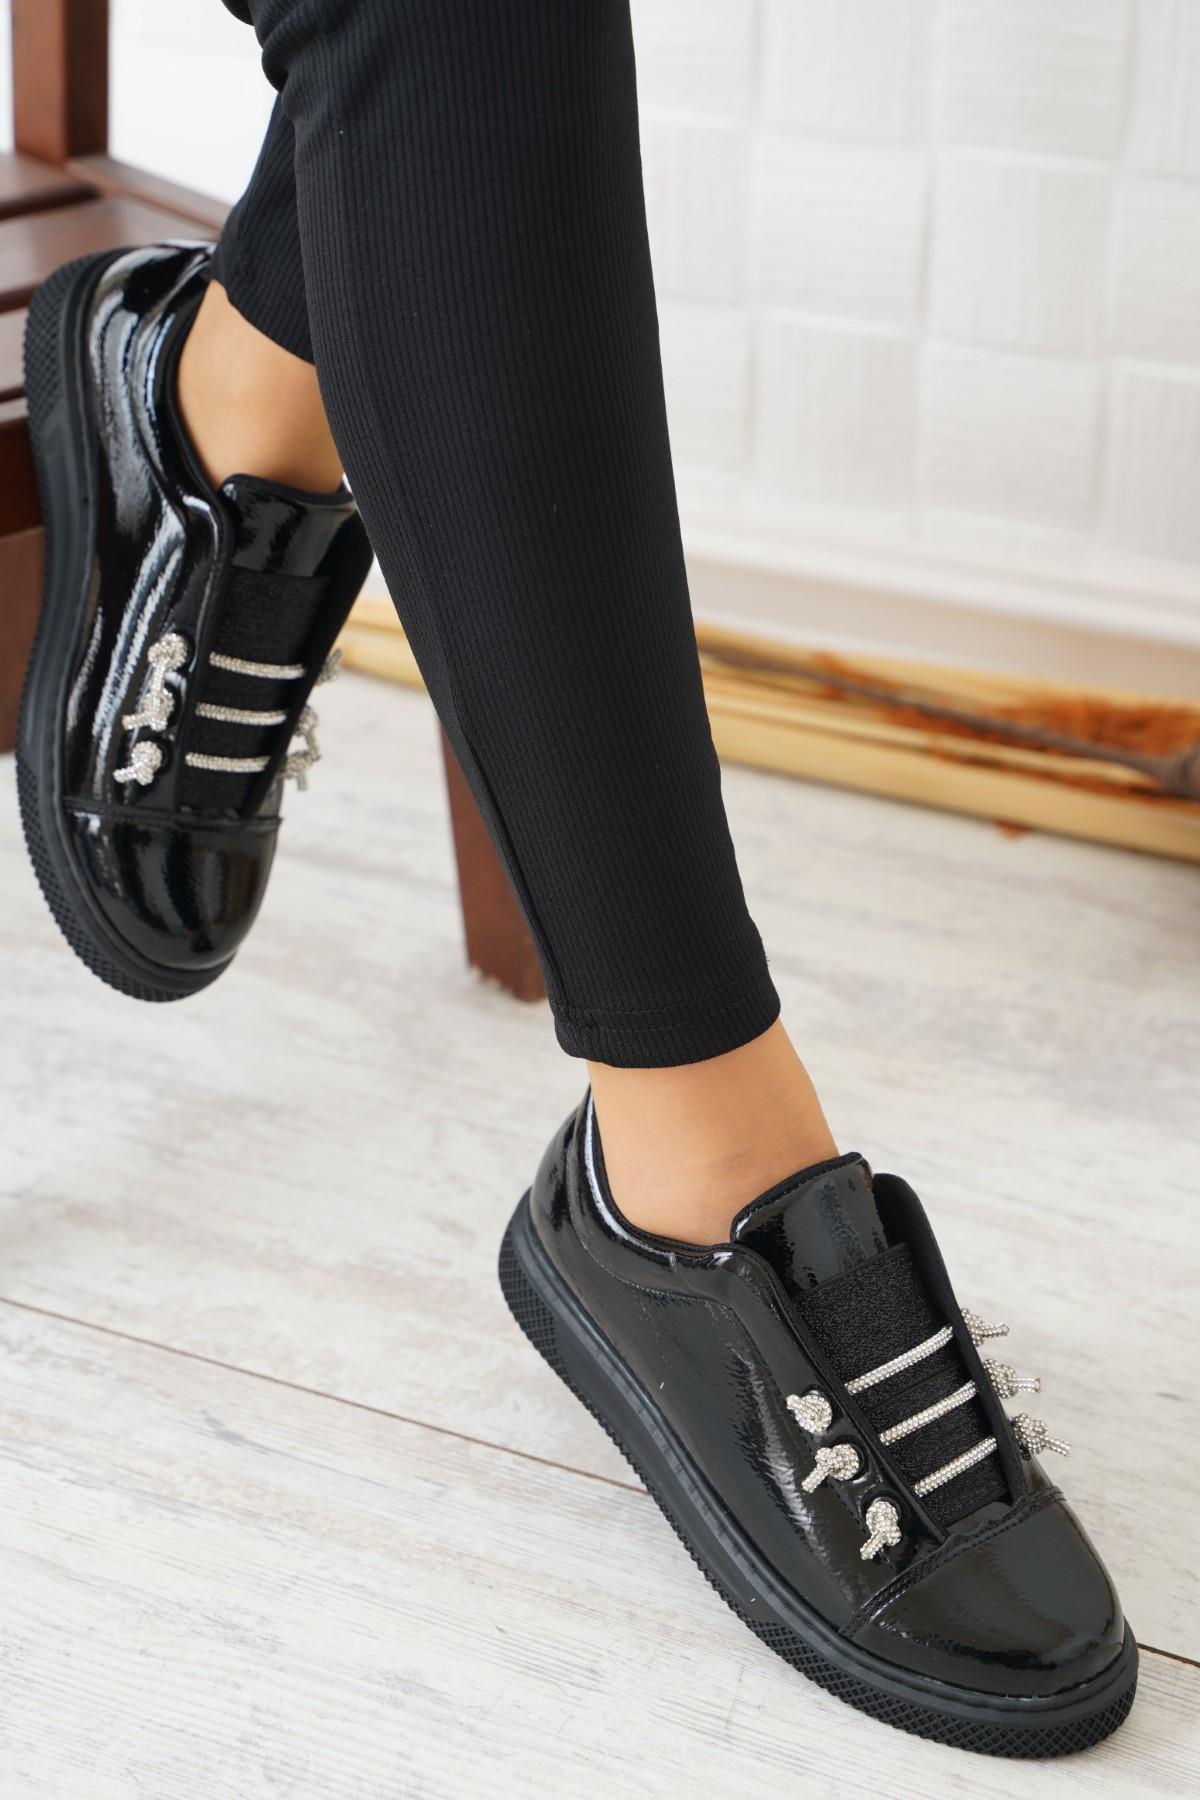 Tereh Taşlı Lastikli Kadın Spor Ayakkabı Siyah Kırısık